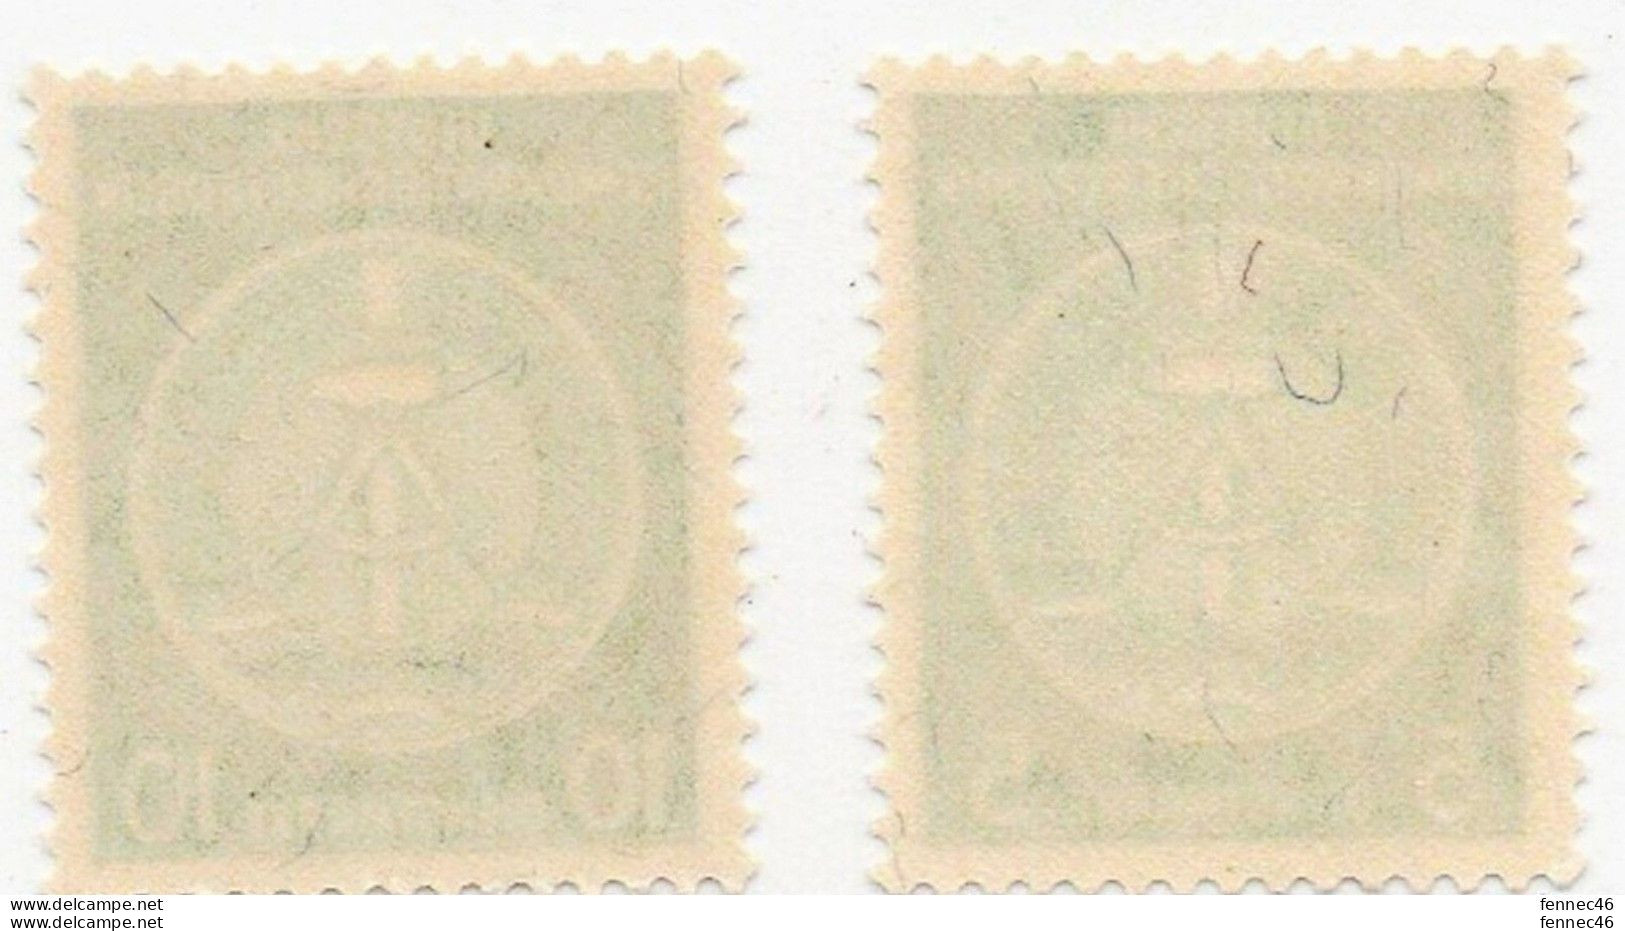 * 2 Timbres - DEUTSCHE DEMOKRATISCHE REPUBLIK DIENSTMARKE 5 Et10 - Unused Stamps